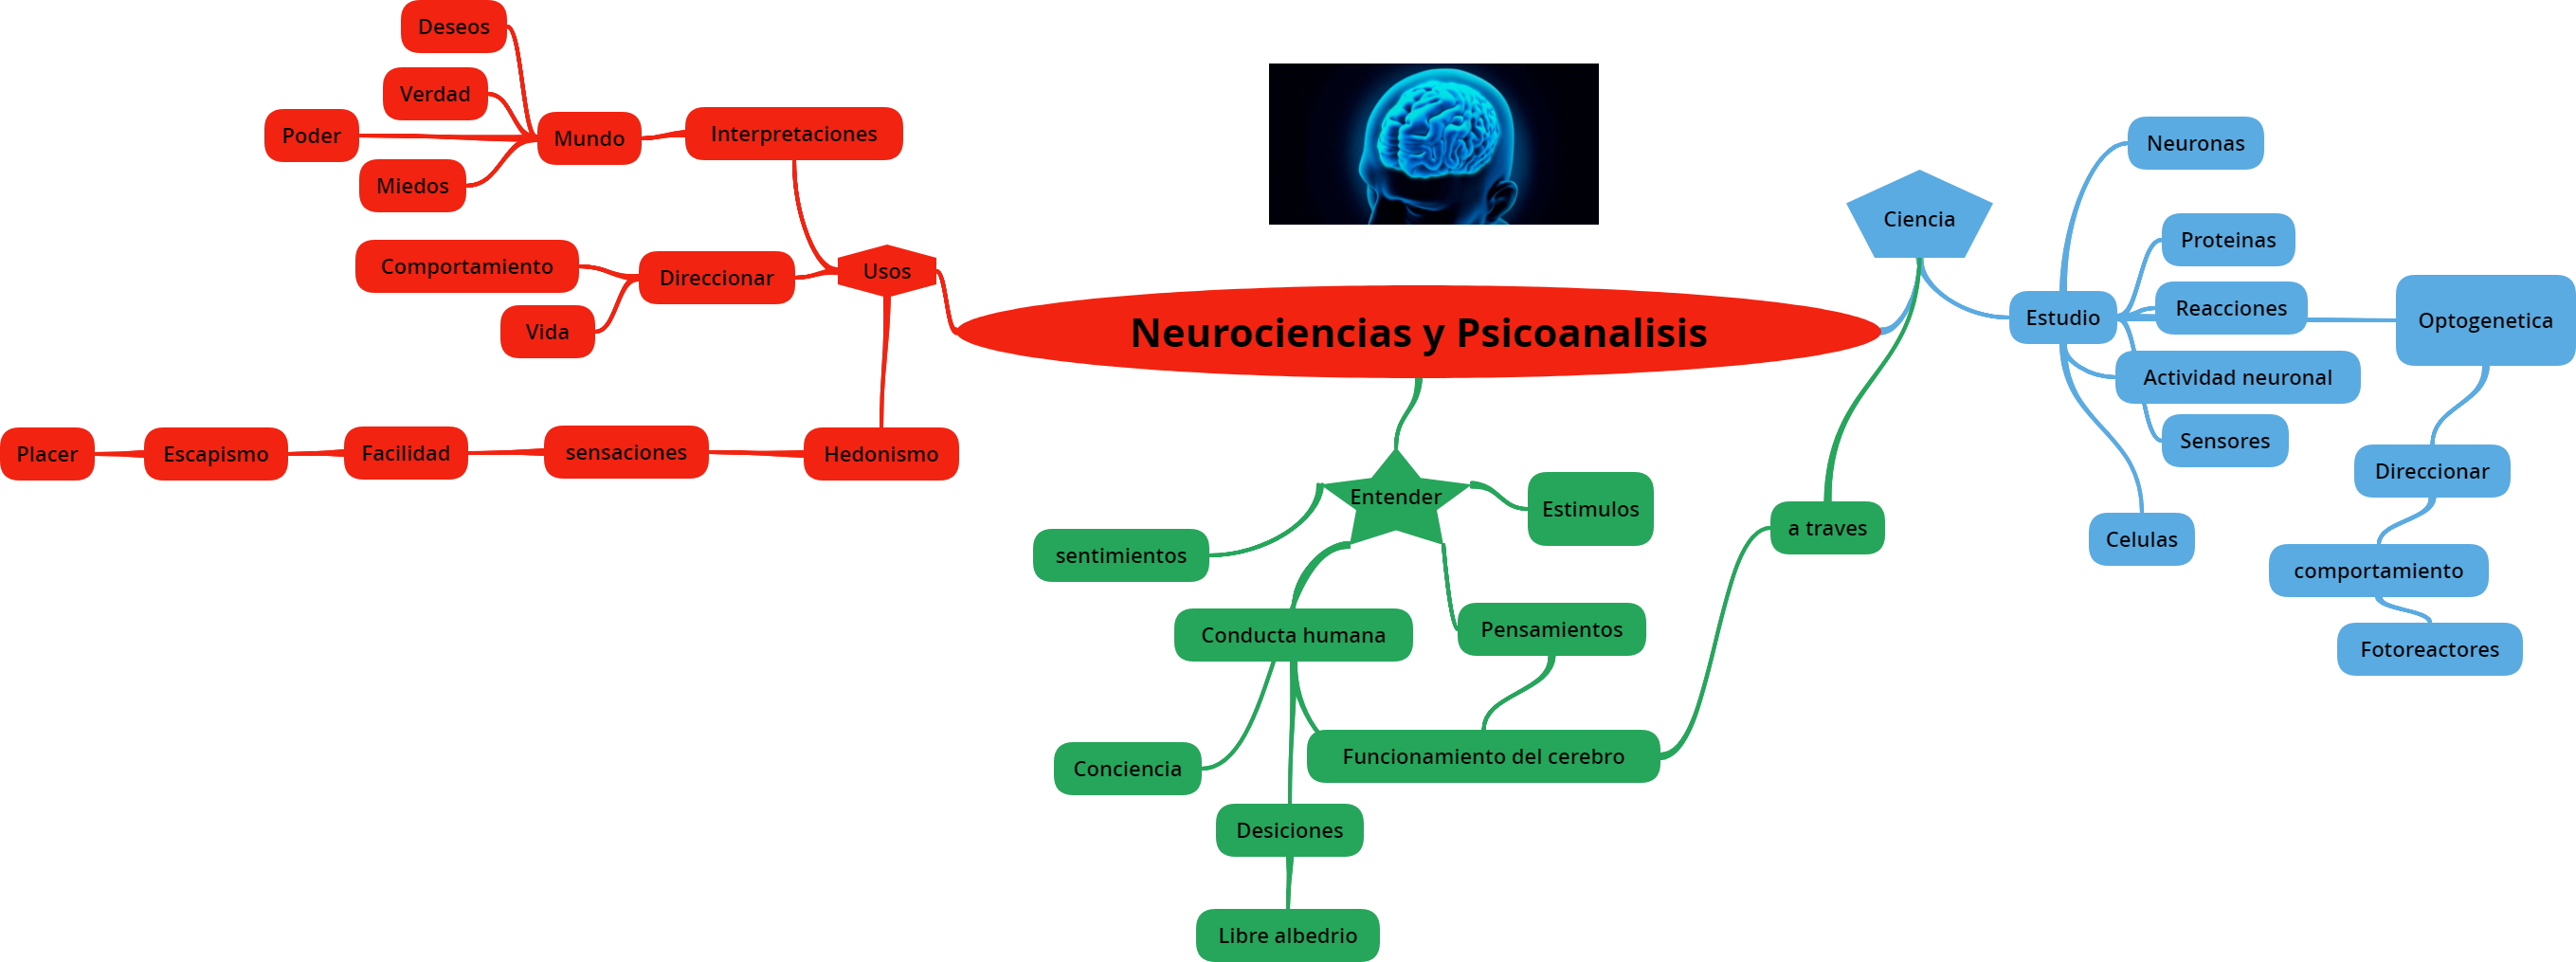 Neurociencias y Psicoanalisis